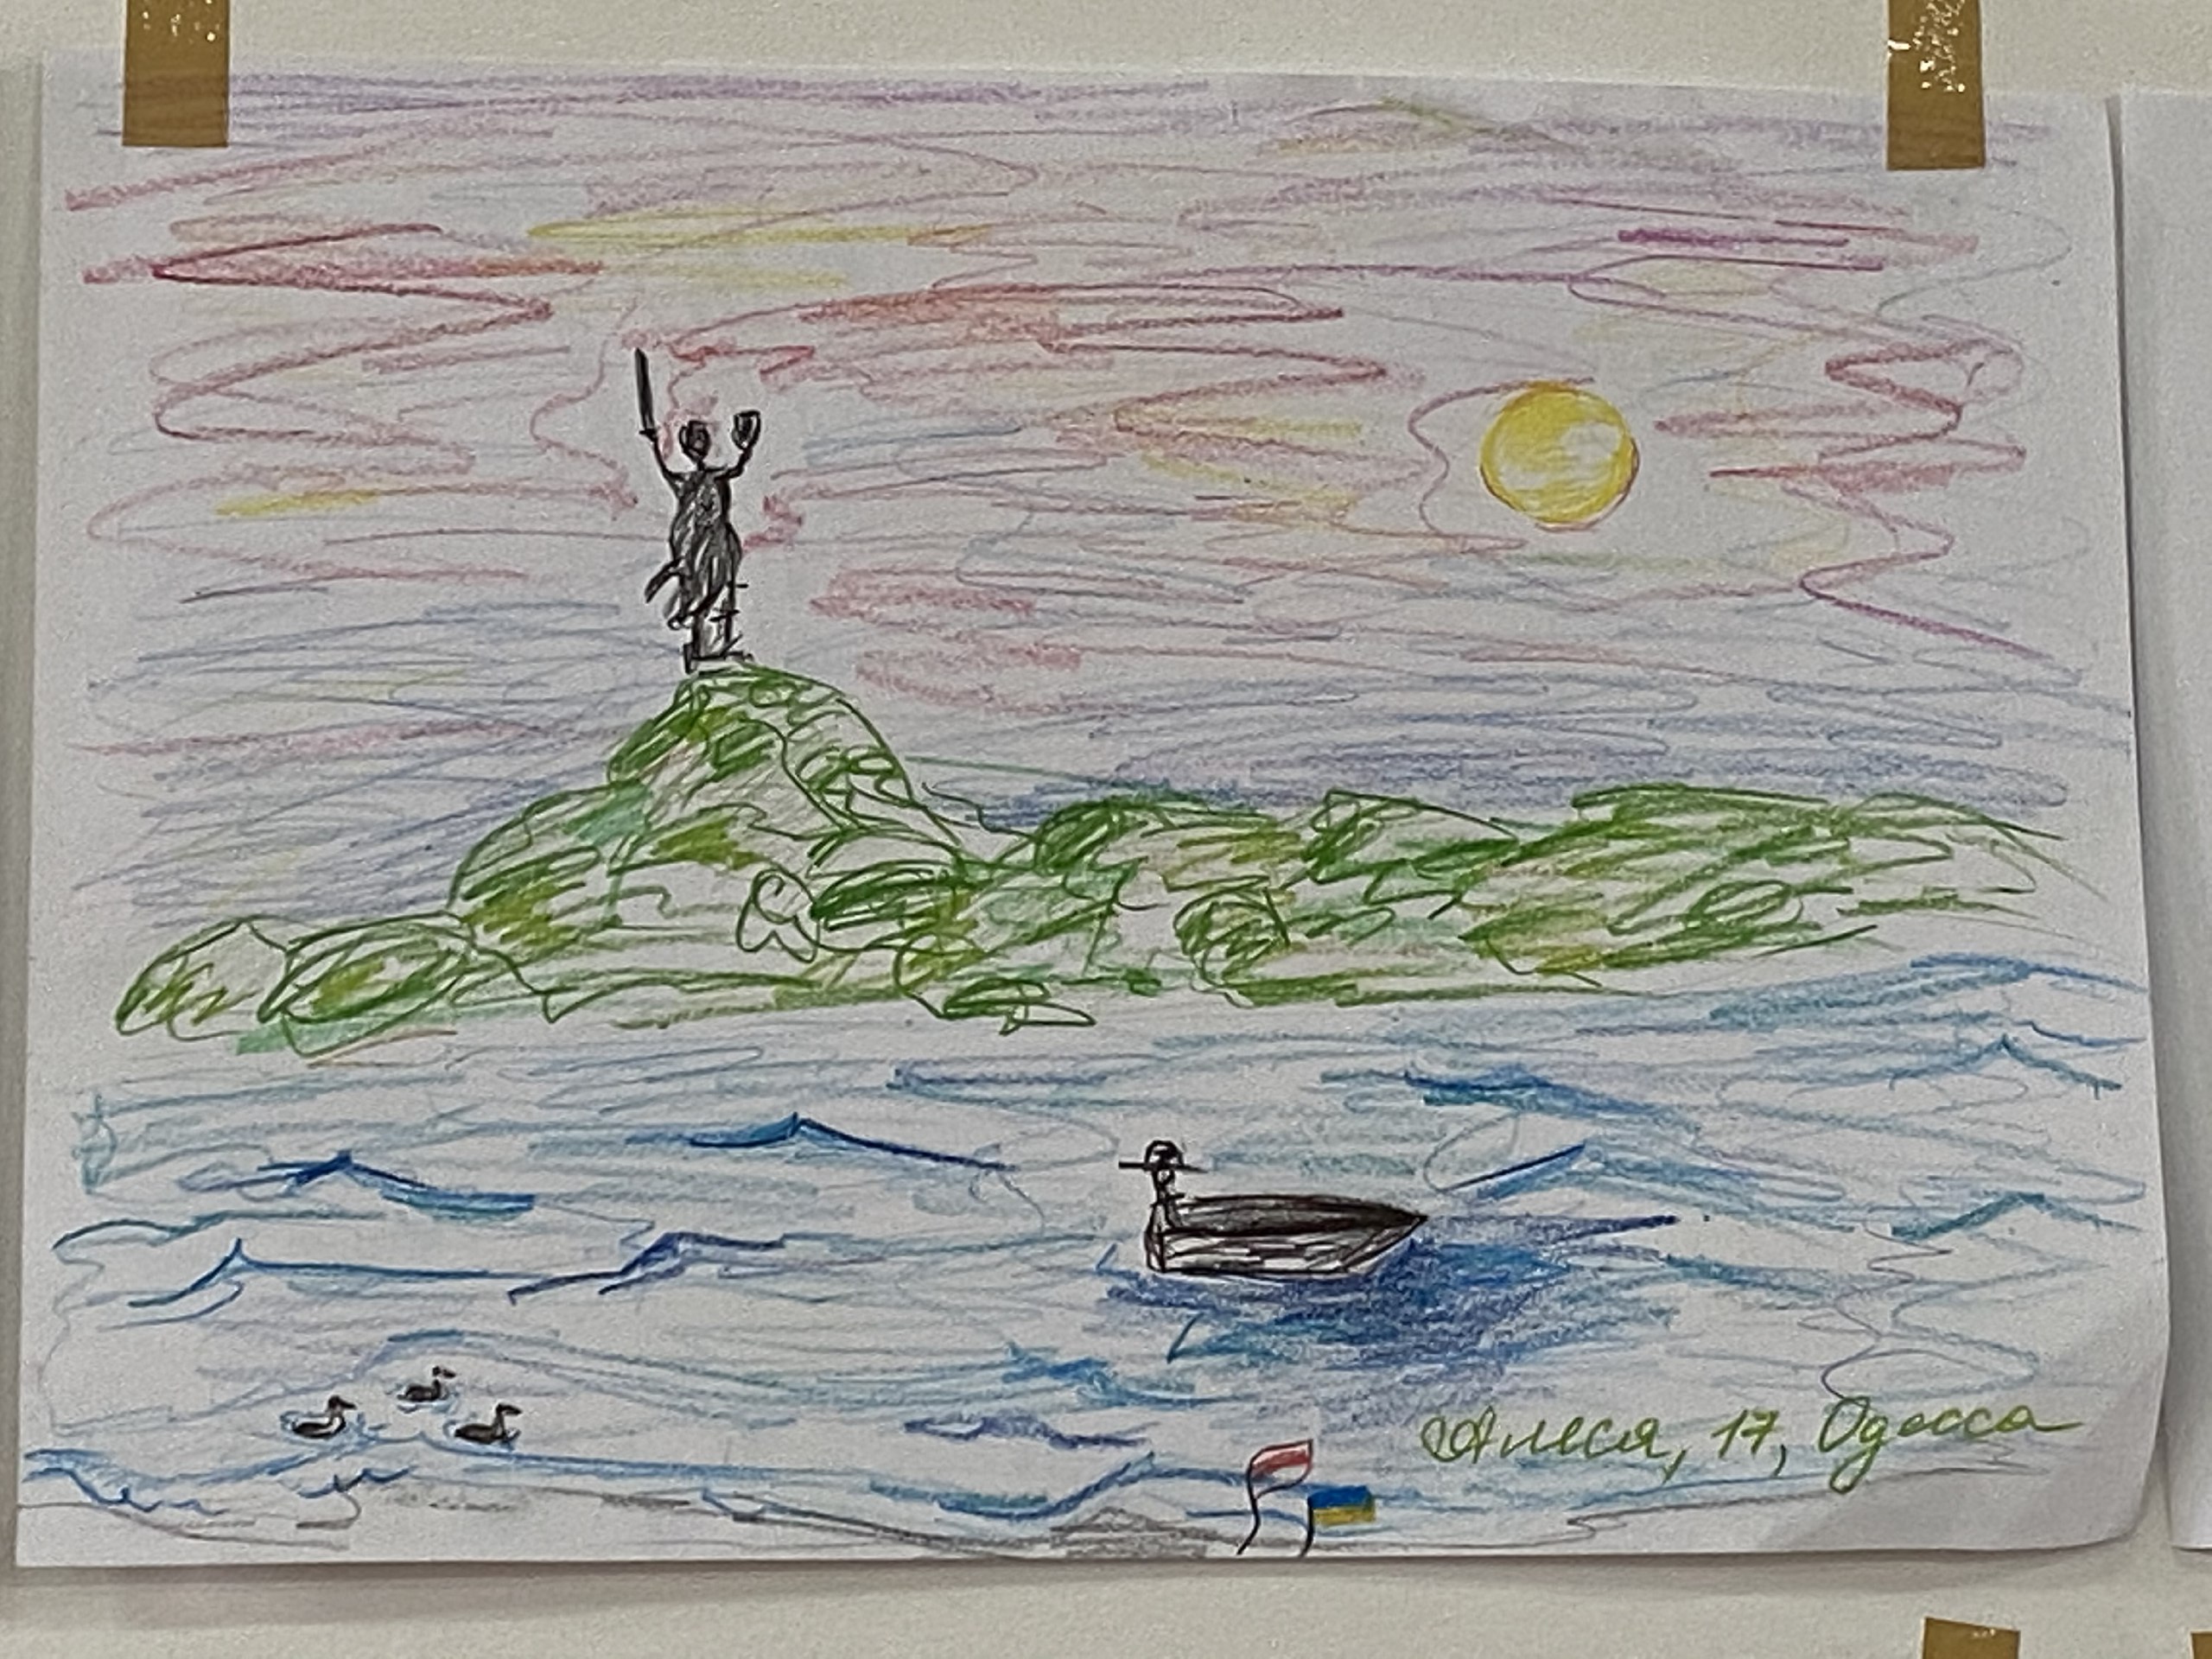 “Горящая школа, солдаты, самолёт”: что рисуют украинские дети, бежавшие от войны